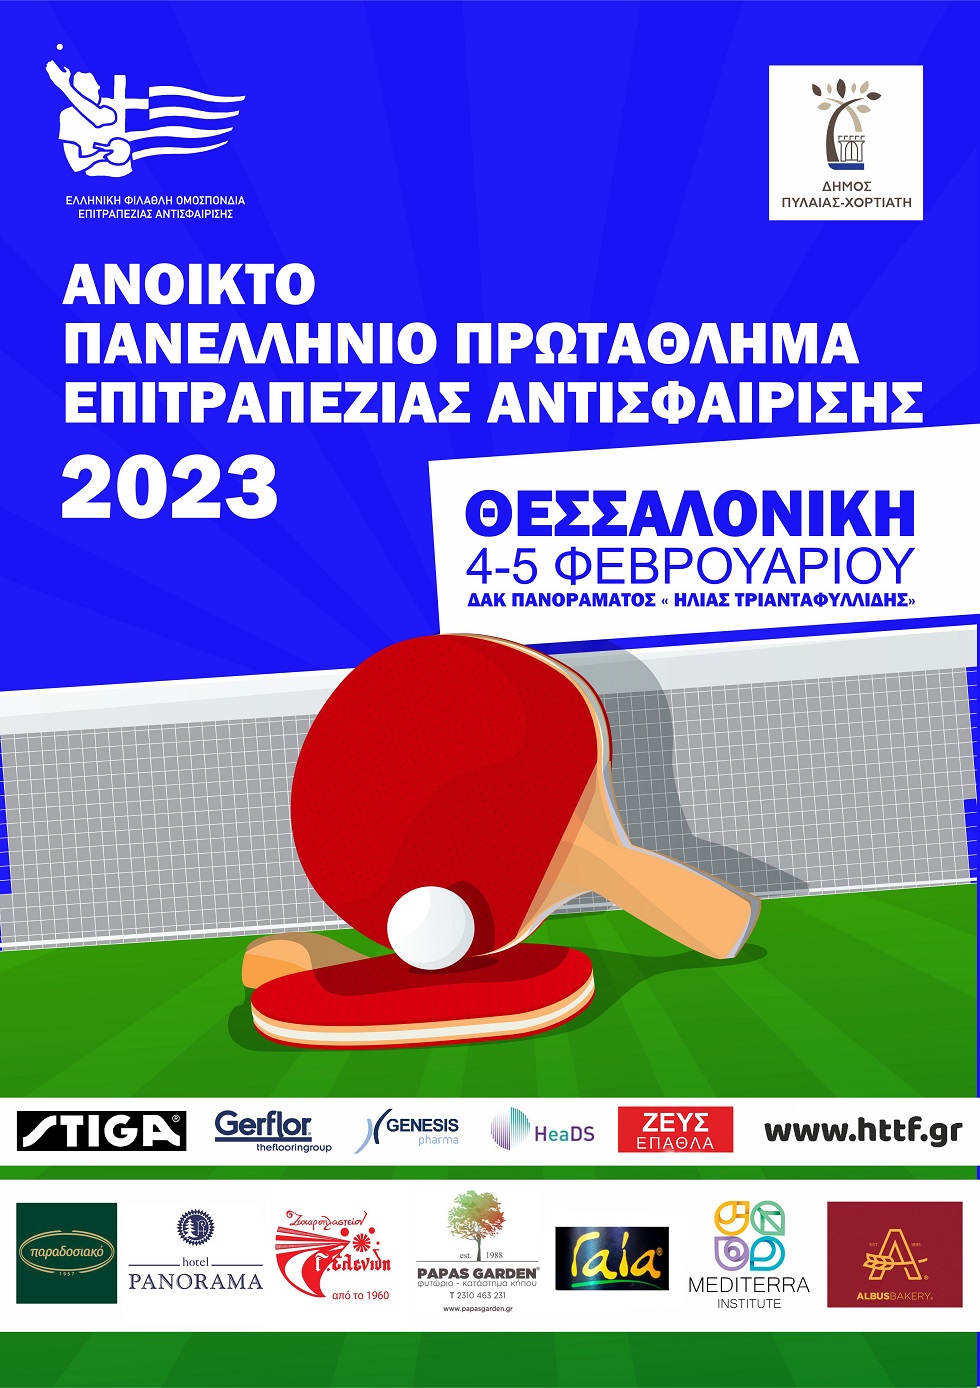 Η Θεσσαλονίκη υποδέχεται πάνω από 250 αθλητές για το 5ο αναπτυξιακό τουρνουά της σεζόν